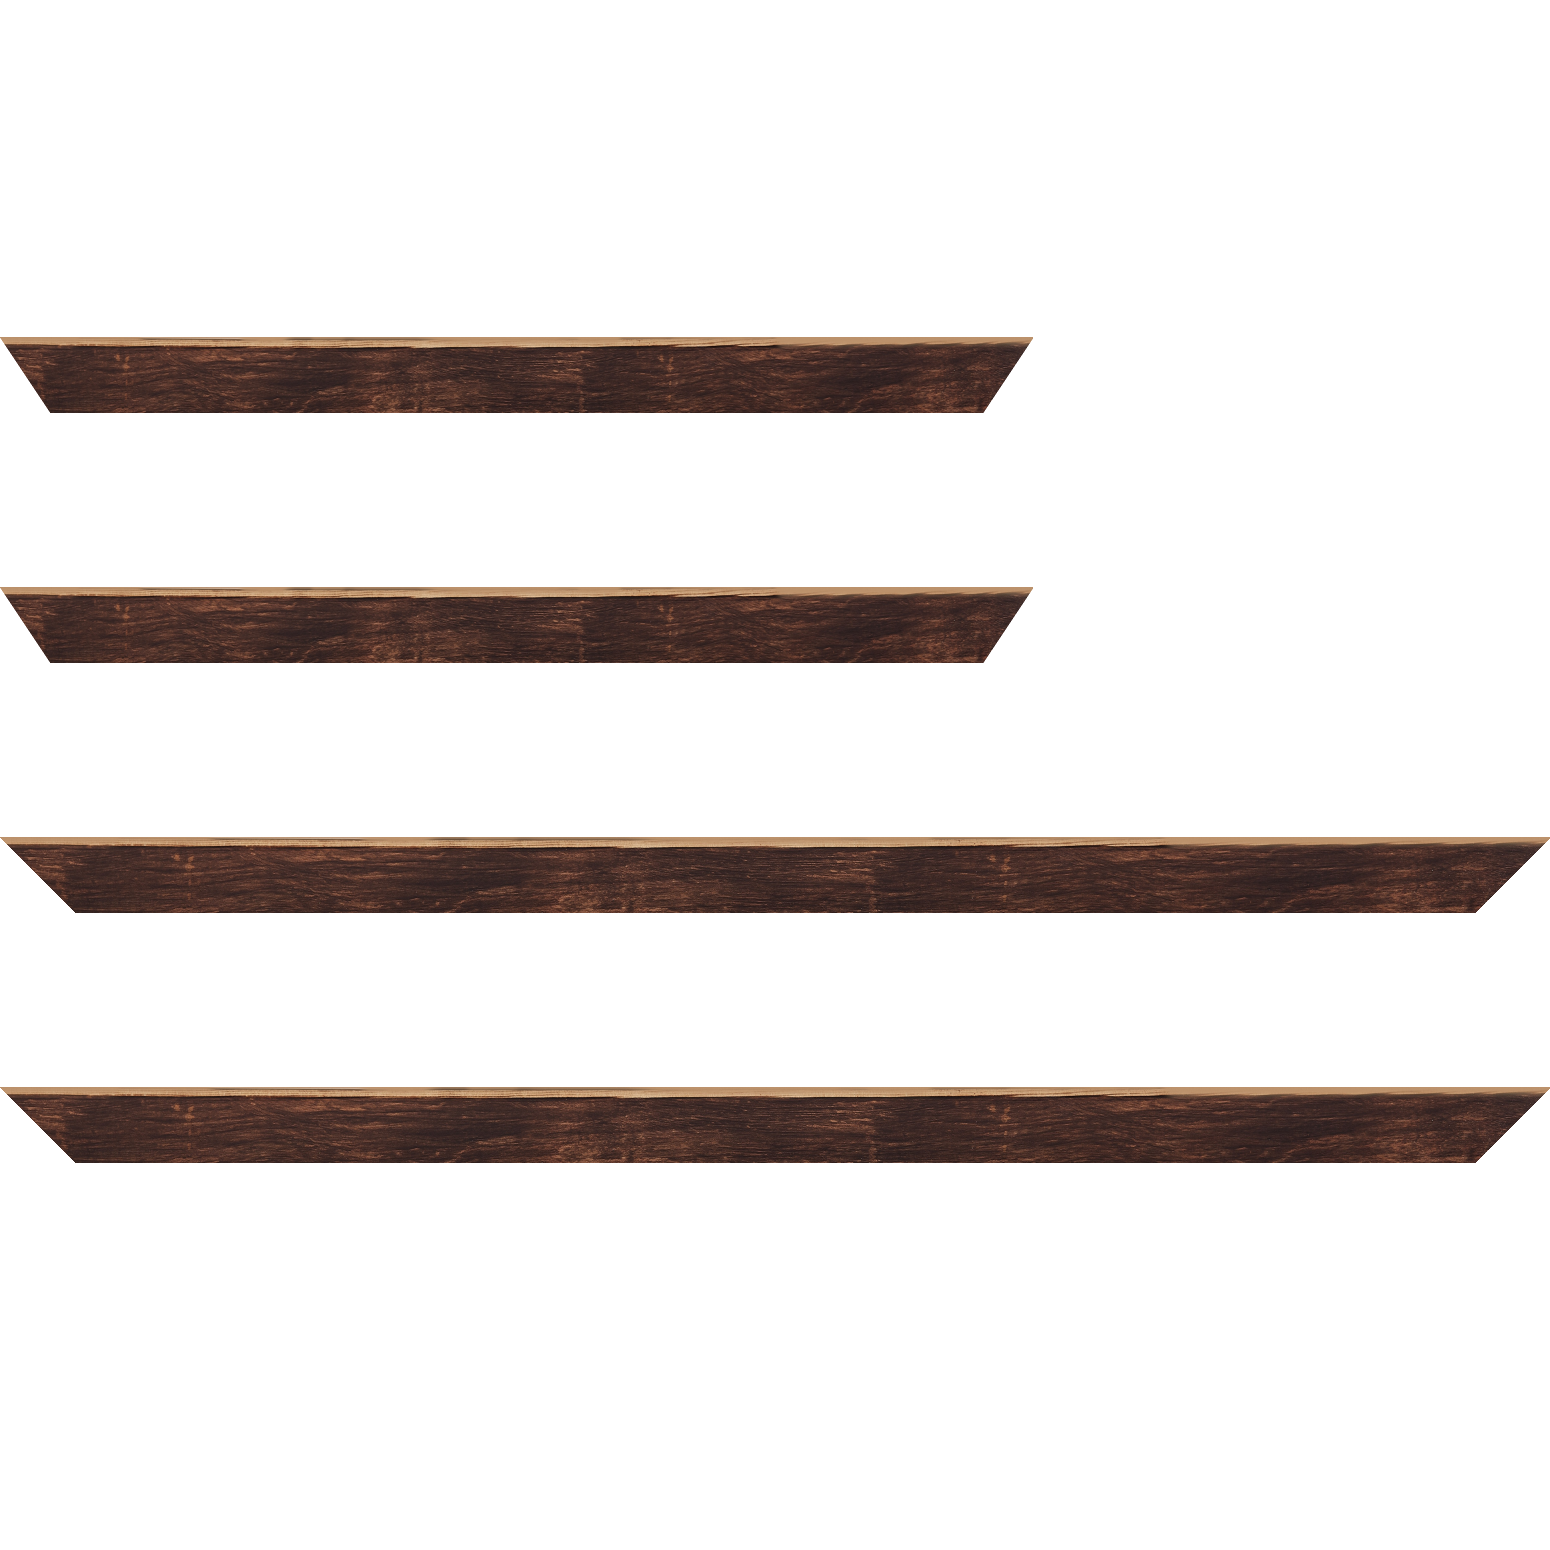 Baguette bois profil arrondi en pente plongeant largeur 2.4cm couleur marron effet ressuyé, angle du cadre extérieur filet naturel - 34x40